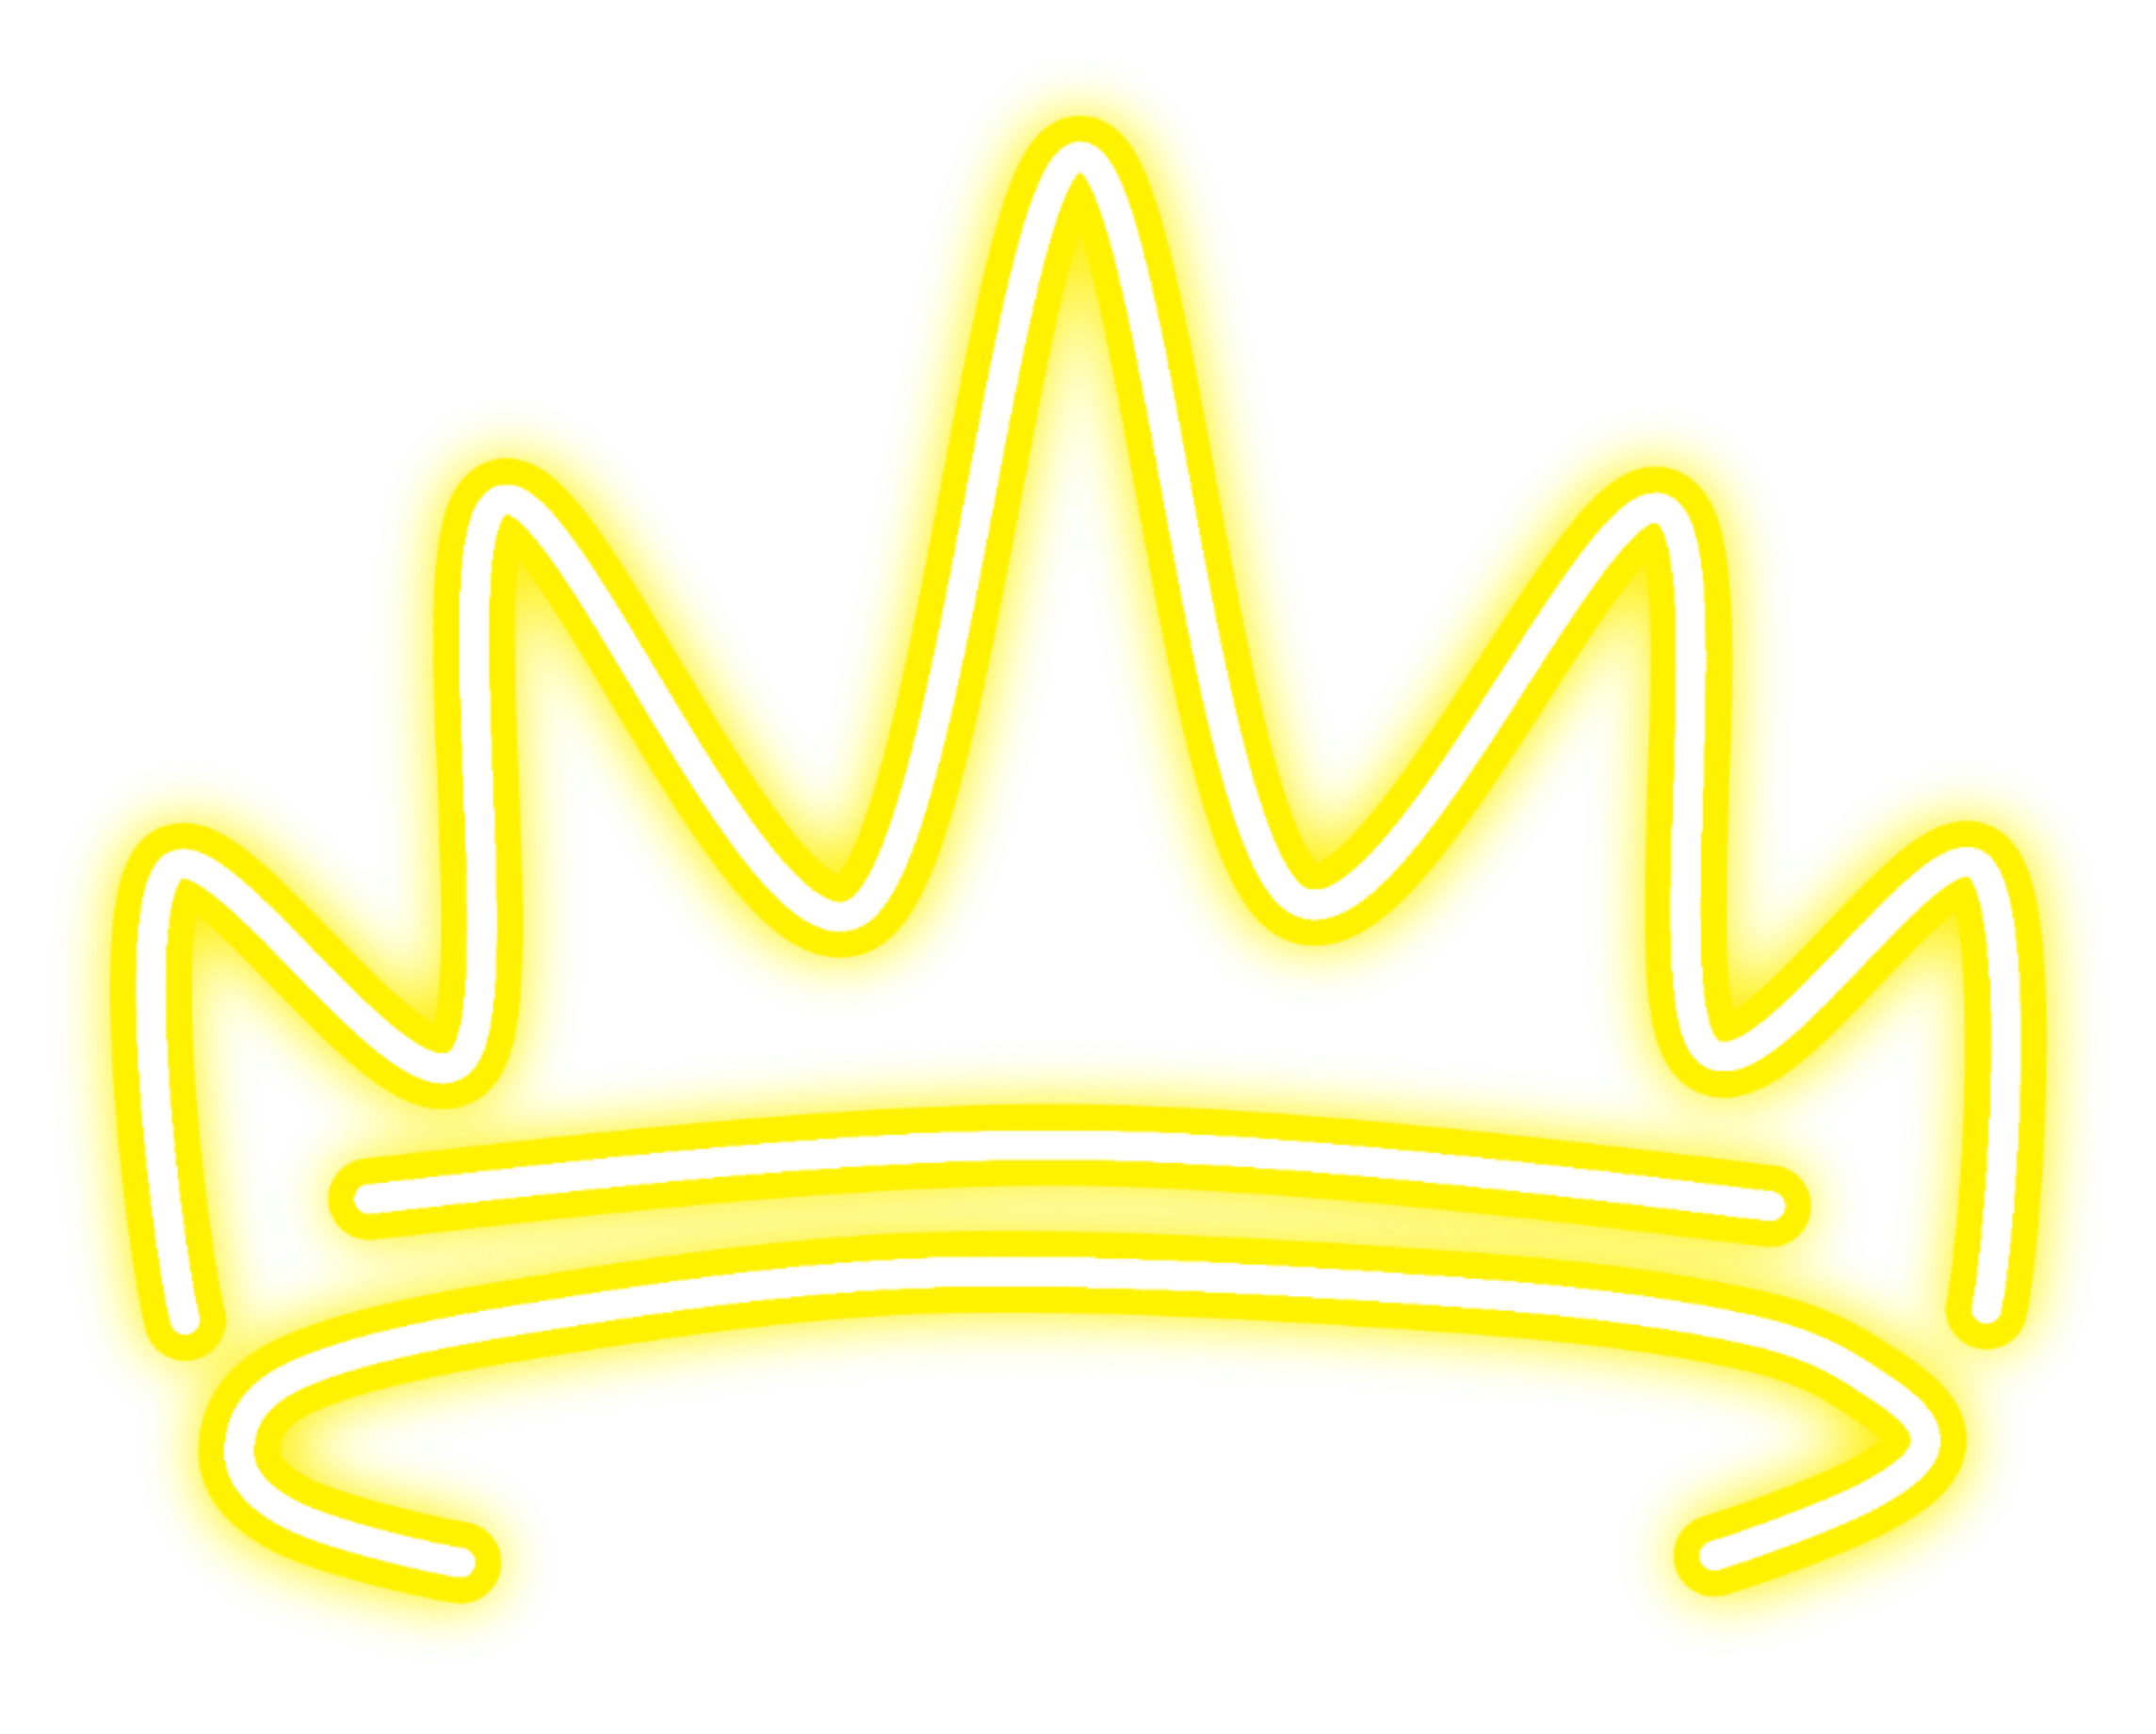 символы короны для пубг фото 47